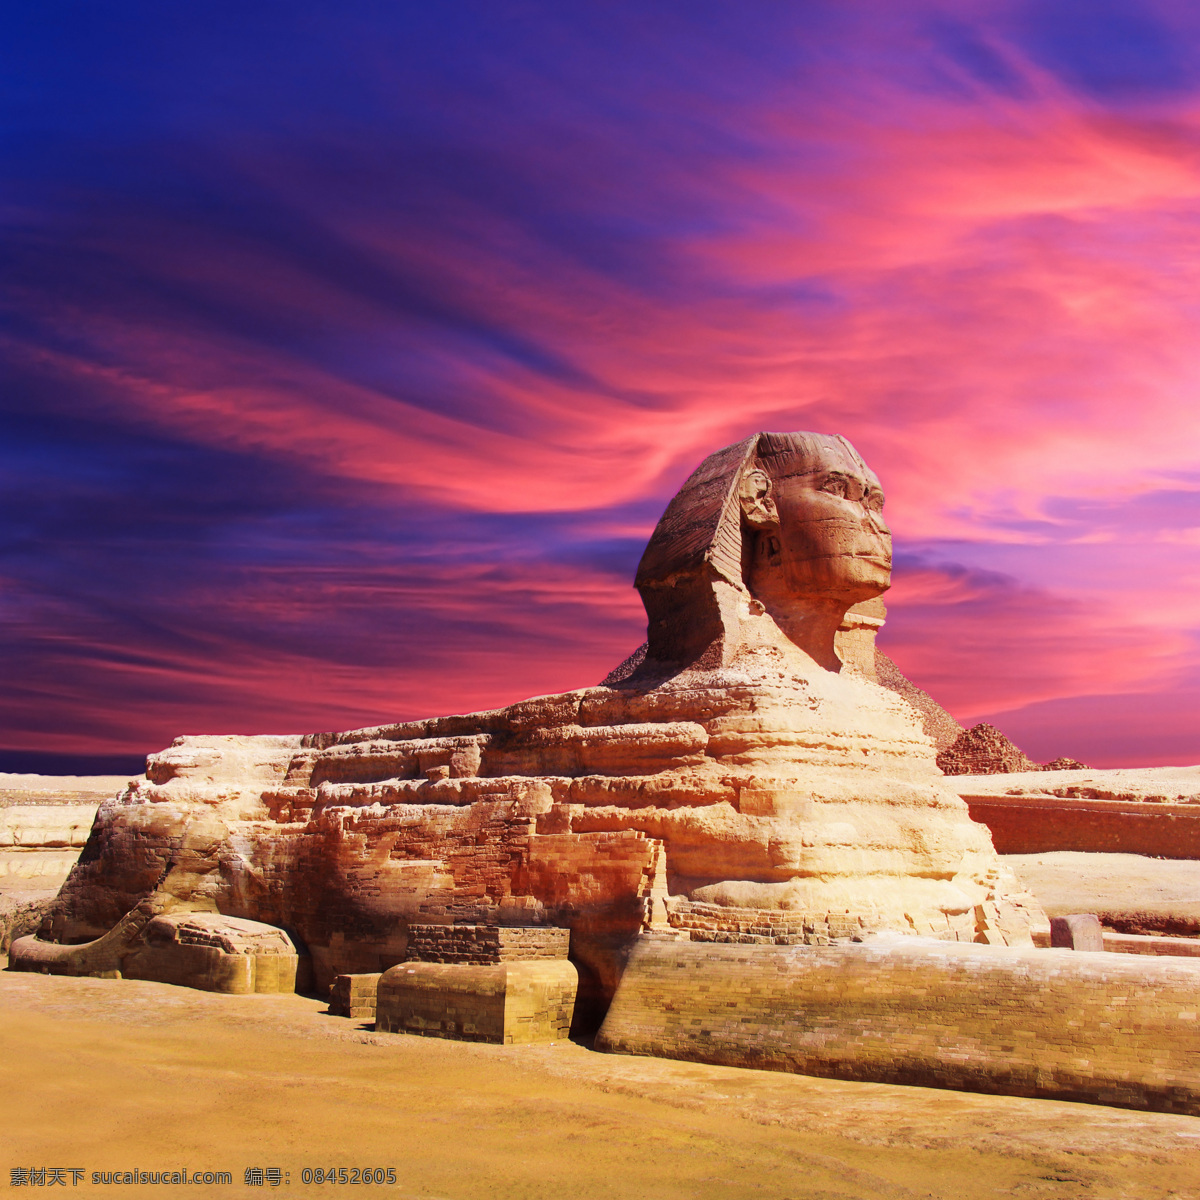 风景 名胜古迹 都市风景 城市风景 景色 国外建筑 民族风味建筑 埃及 狮身人面像 旅游摄影 国内旅游